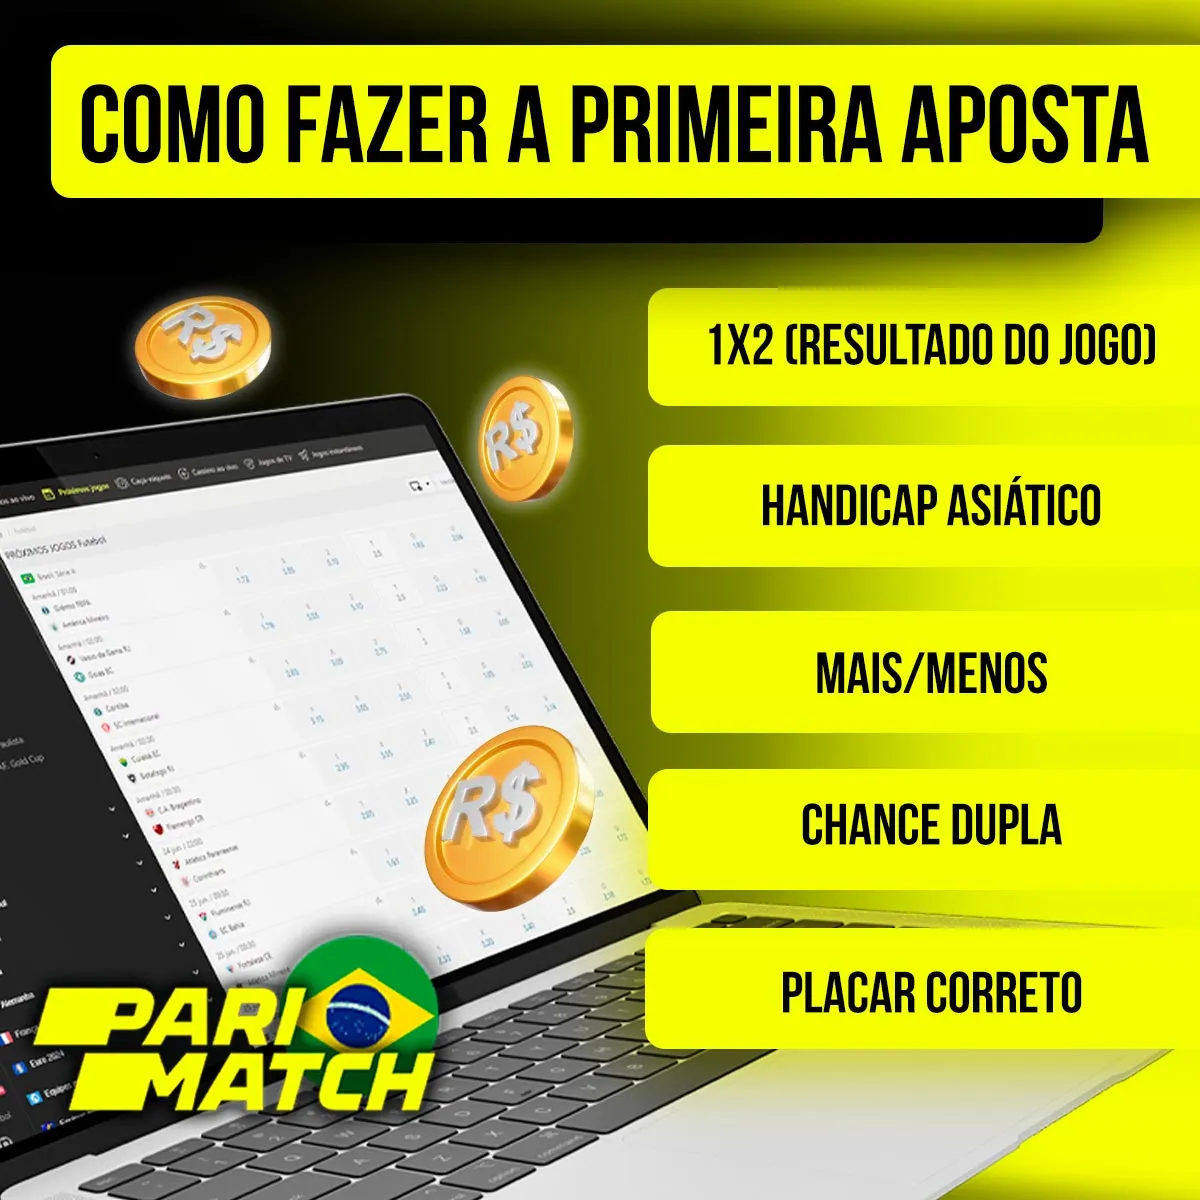 Como fazer a primeira aposta na casa de apostas Parimatch no mercado brasileiro